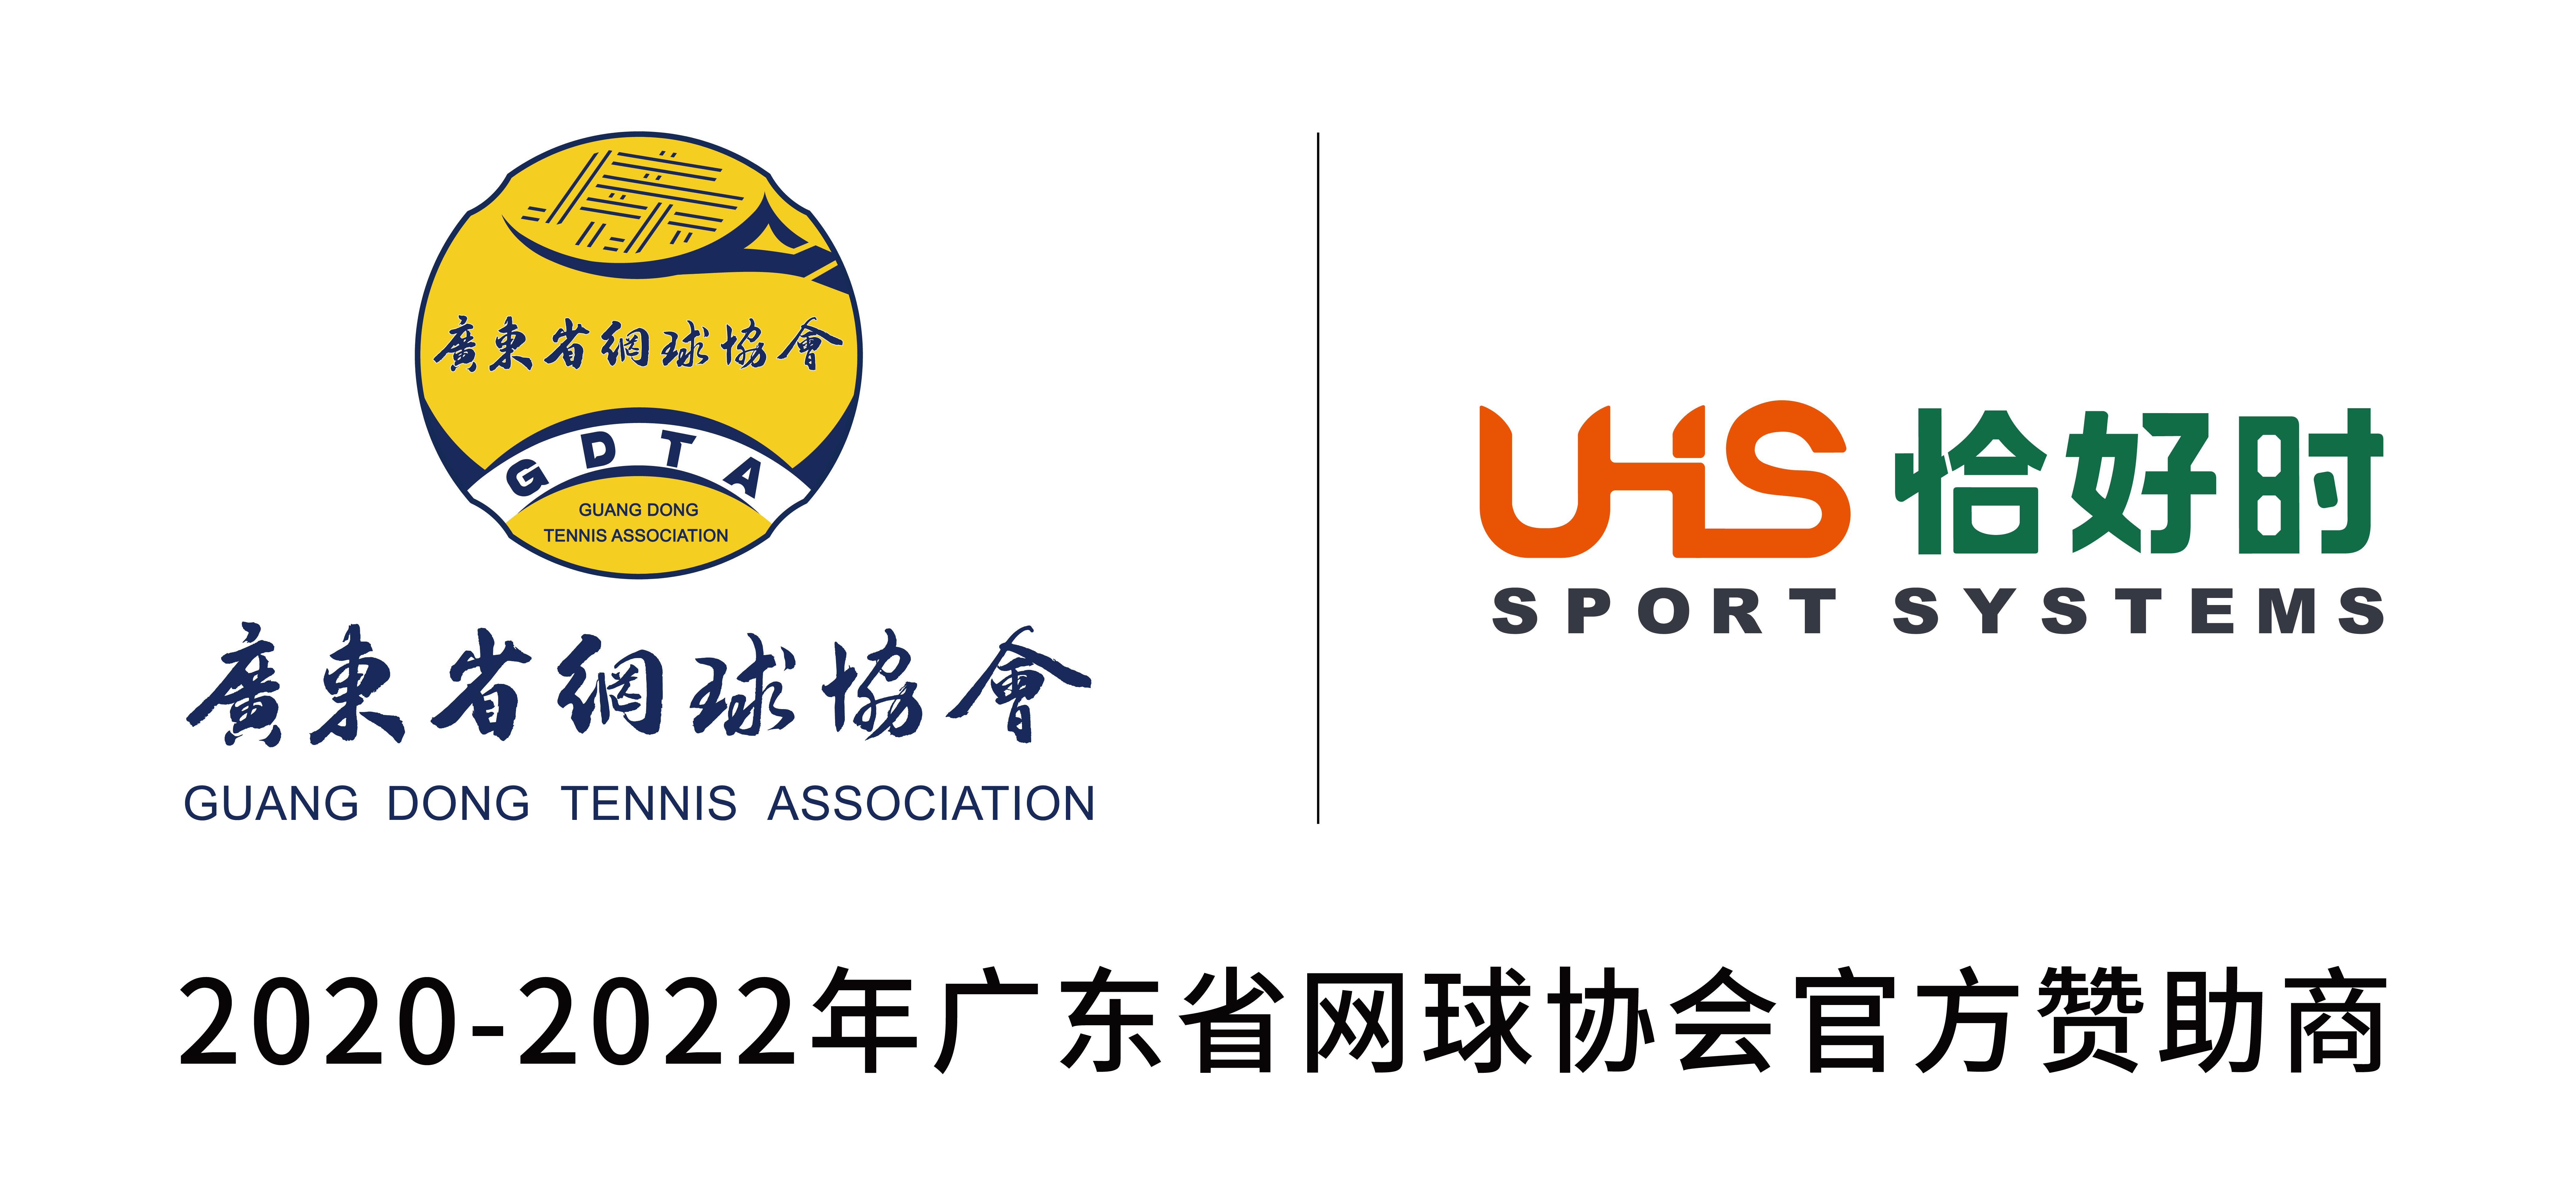 广东恰好时体育有限公司—广东省网球协会年度赞助商